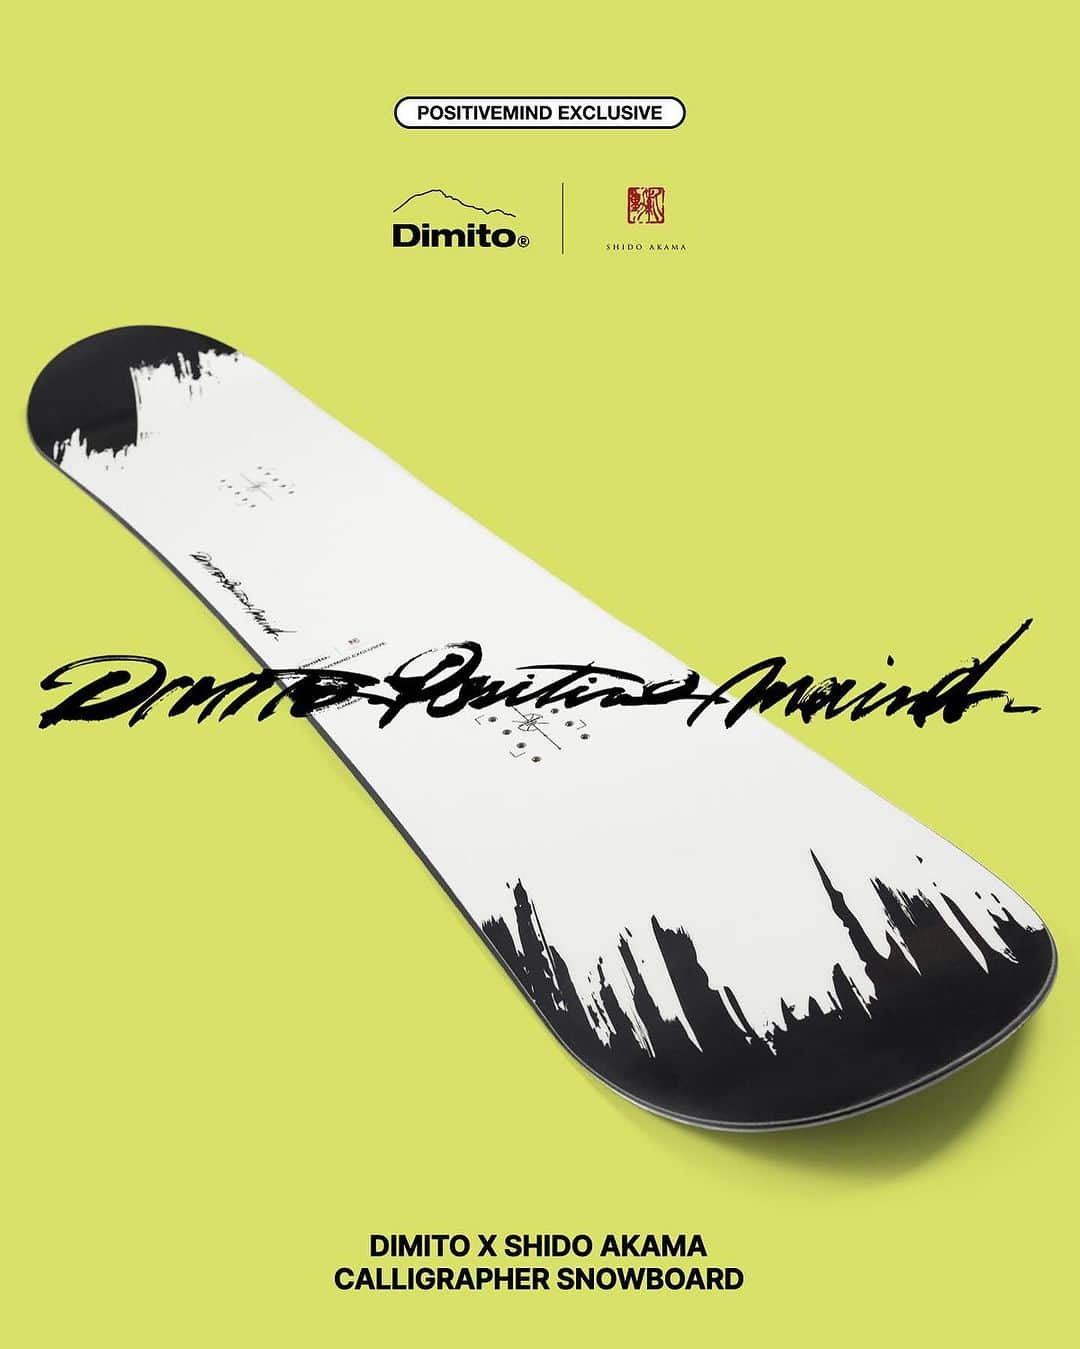 赤間紫動のインスタグラム：「“DIMITO POSITIVE MIND” - - - [DIMITO X SHIDO AKAMA] CALLIGRAPHER SNOWBOARD - - - 韓国発のブランド“DIMITO POSITIVE MIND”から自分のデザインが入ったコラボレーションスノーボードがリリースされました。自分がスノーボードを始めてから数十年後にまさか自分のスノーボードがリリースされるなんて夢にも思ってなかった。。Dimito teamはじめ皆様に感謝です。 - - - web https://dimito.com - - - @dimito_positivemind @shido_ak - - - #Repost @dimito_positivemind with @use.repost ・・・ [DIMITO X SHIDO AKAMA] CALLIGRAPHER SNOWBOARD🏂 ⁡ 2003년부터 일본에서 서예가로 활동하고있는  SHIDO AKAMA(@shido_ak )와의 협업으로 탄생한 CALLIGRAPHER SNOWBOARD는 독보적인 디자인과 강렬한 퍼포먼스를 모두 담아낸 유니크한 FREE RIDE SNOWBOARD 입니다. ⁡ SHIDO AMAKA, who has been working as a calligrapher in Japan since 2003, have come together with Dimito in our latest collaboration project to introduce CALLIGRAPHER SNOWBOARD providing a unique FREE RIDE SNOWBOARD that combines unrivaled design and powerful performance. ⁡ www.dimito.com Worldwide 🌎🌍🌏 shipping #dimito #dimitopositivemind #디미토 #snowboarding  #shidoakama #赤間紫動#calligraphy#calligrapher#drawing#tokyo#japan#calligrafia#kaligrafi#caligrafo#shodo#abstractpainting#abstractart#avantgardecalligraphy#前衛書道#墨象#白黒#书道#서예#書道」